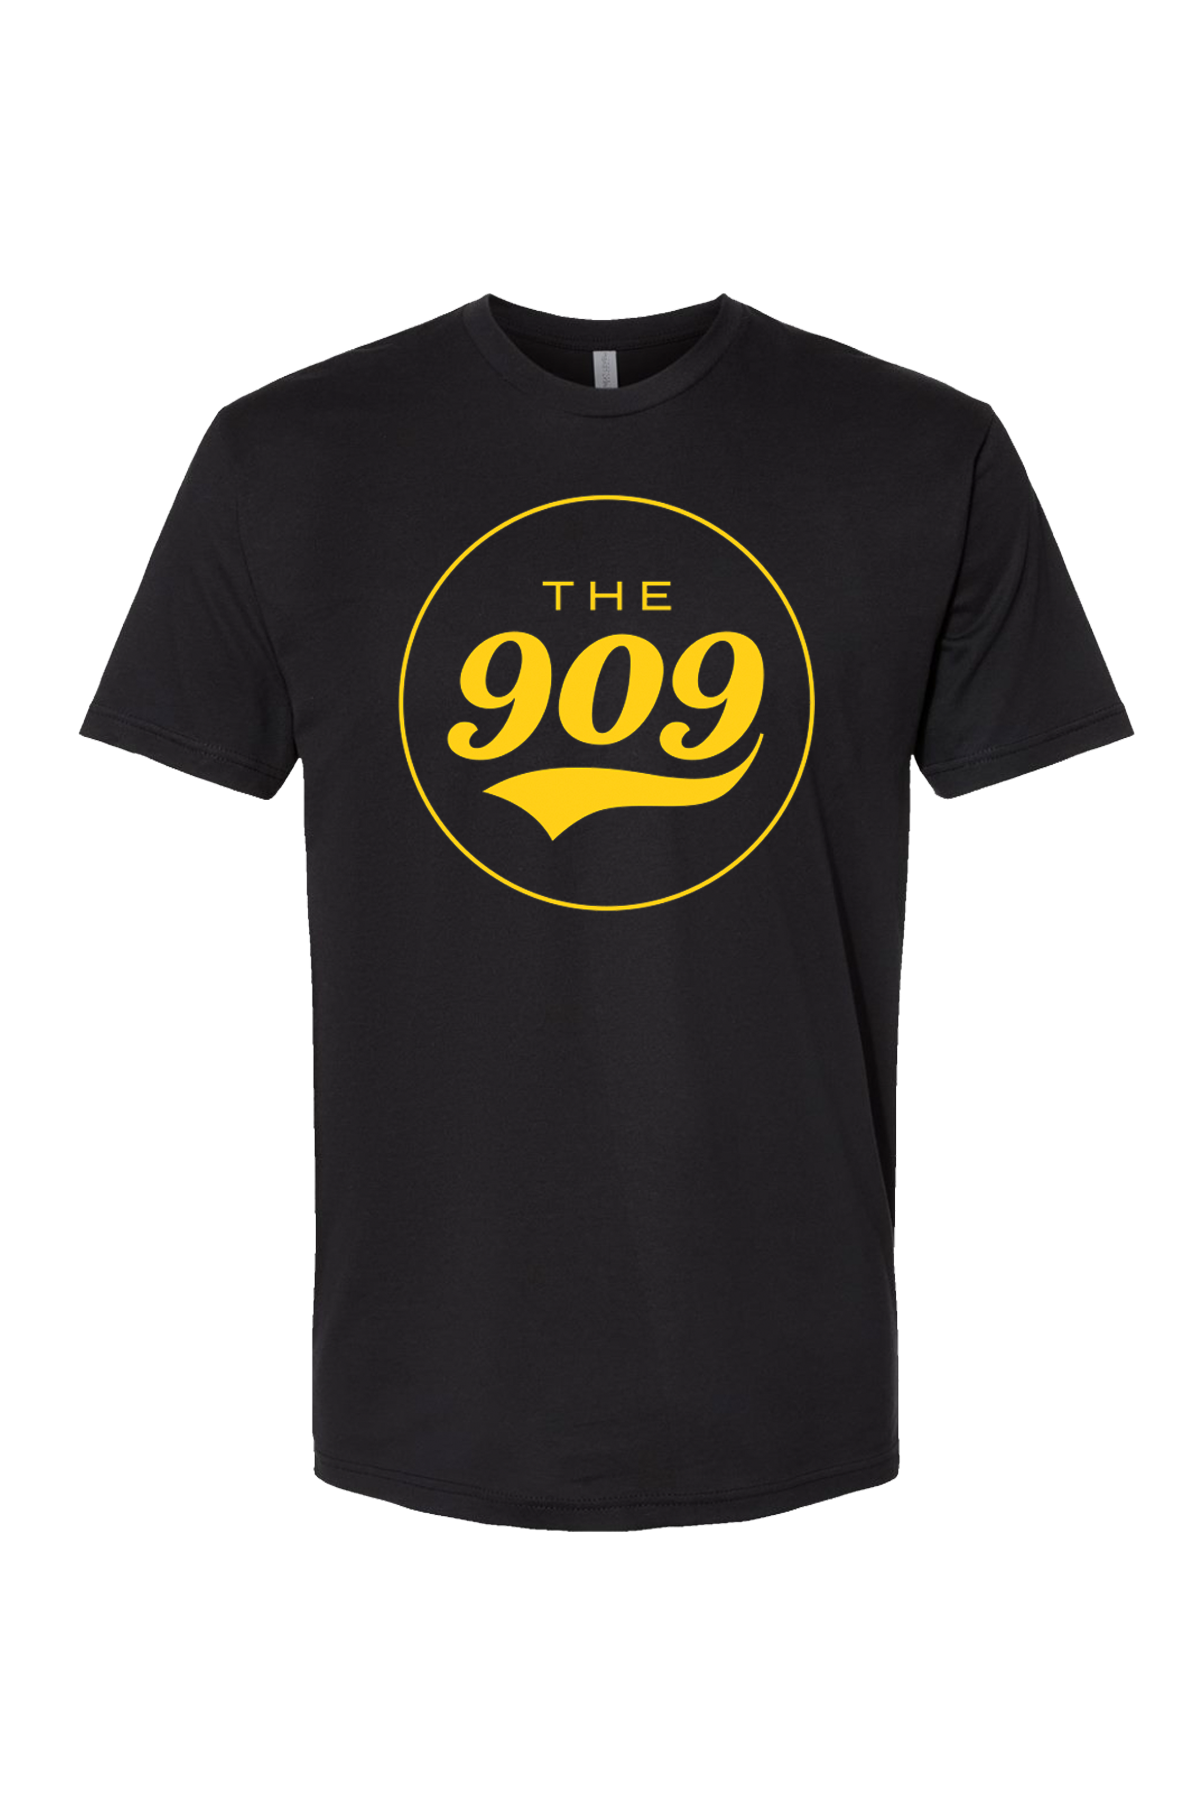 The 909 Next Level Tee 3600 - Black